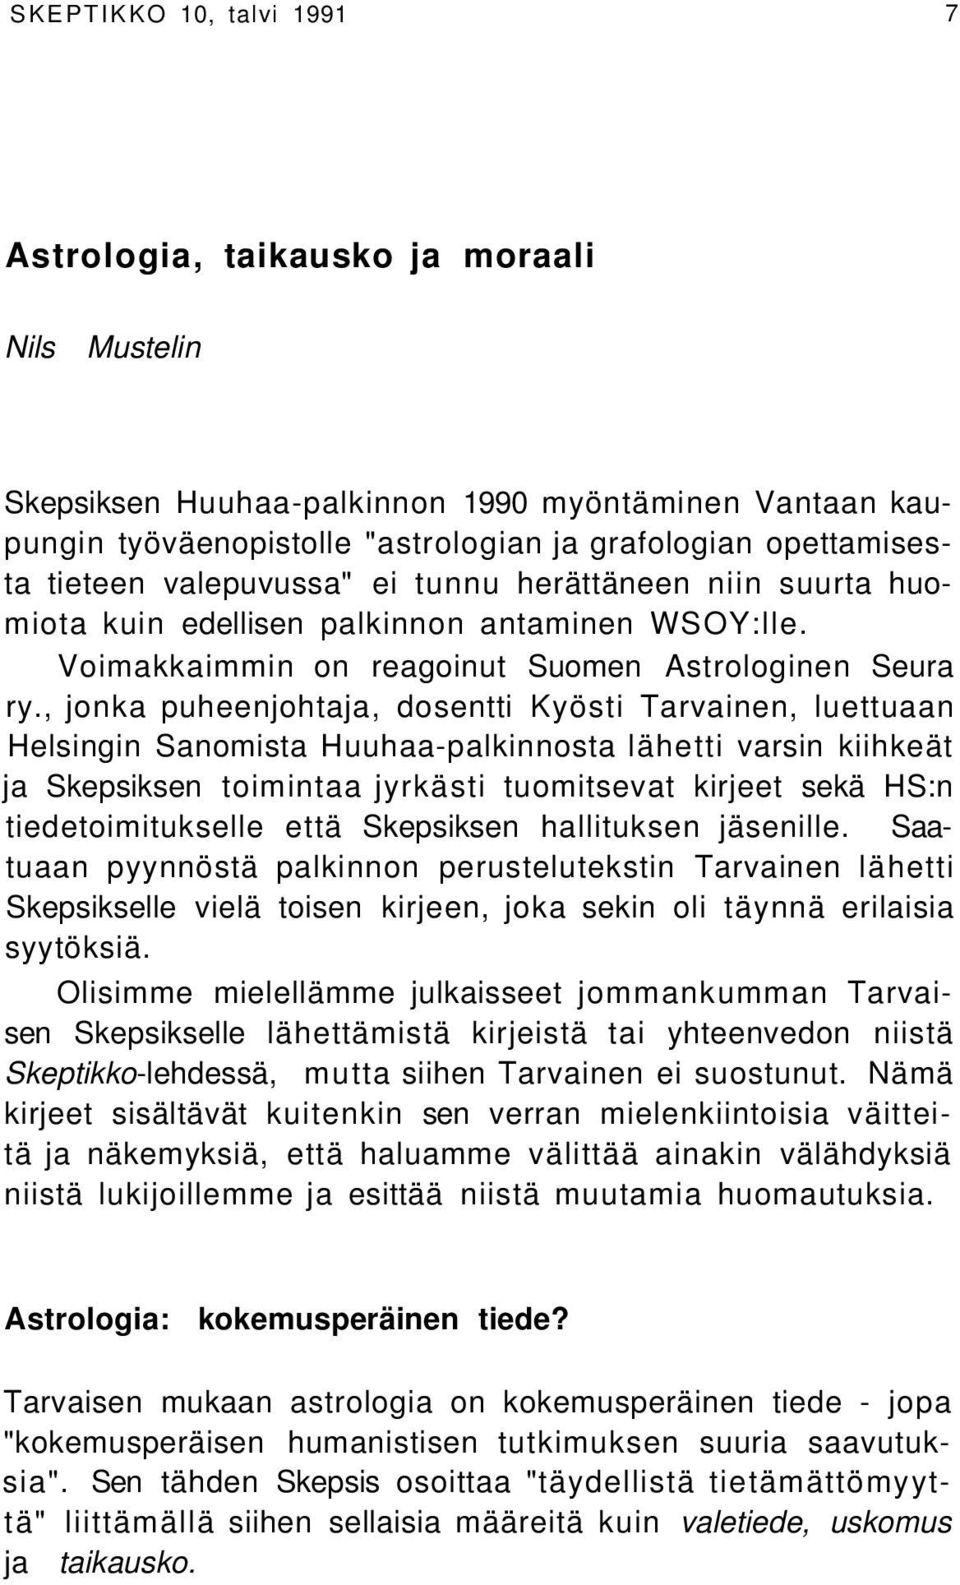 , jonka puheenjohtaja, dosentti Kyösti Tarvainen, luettuaan Helsingin Sanomista Huuhaa-palkinnosta lähetti varsin kiihkeät ja Skepsiksen toimintaa jyrkästi tuomitsevat kirjeet sekä HS:n